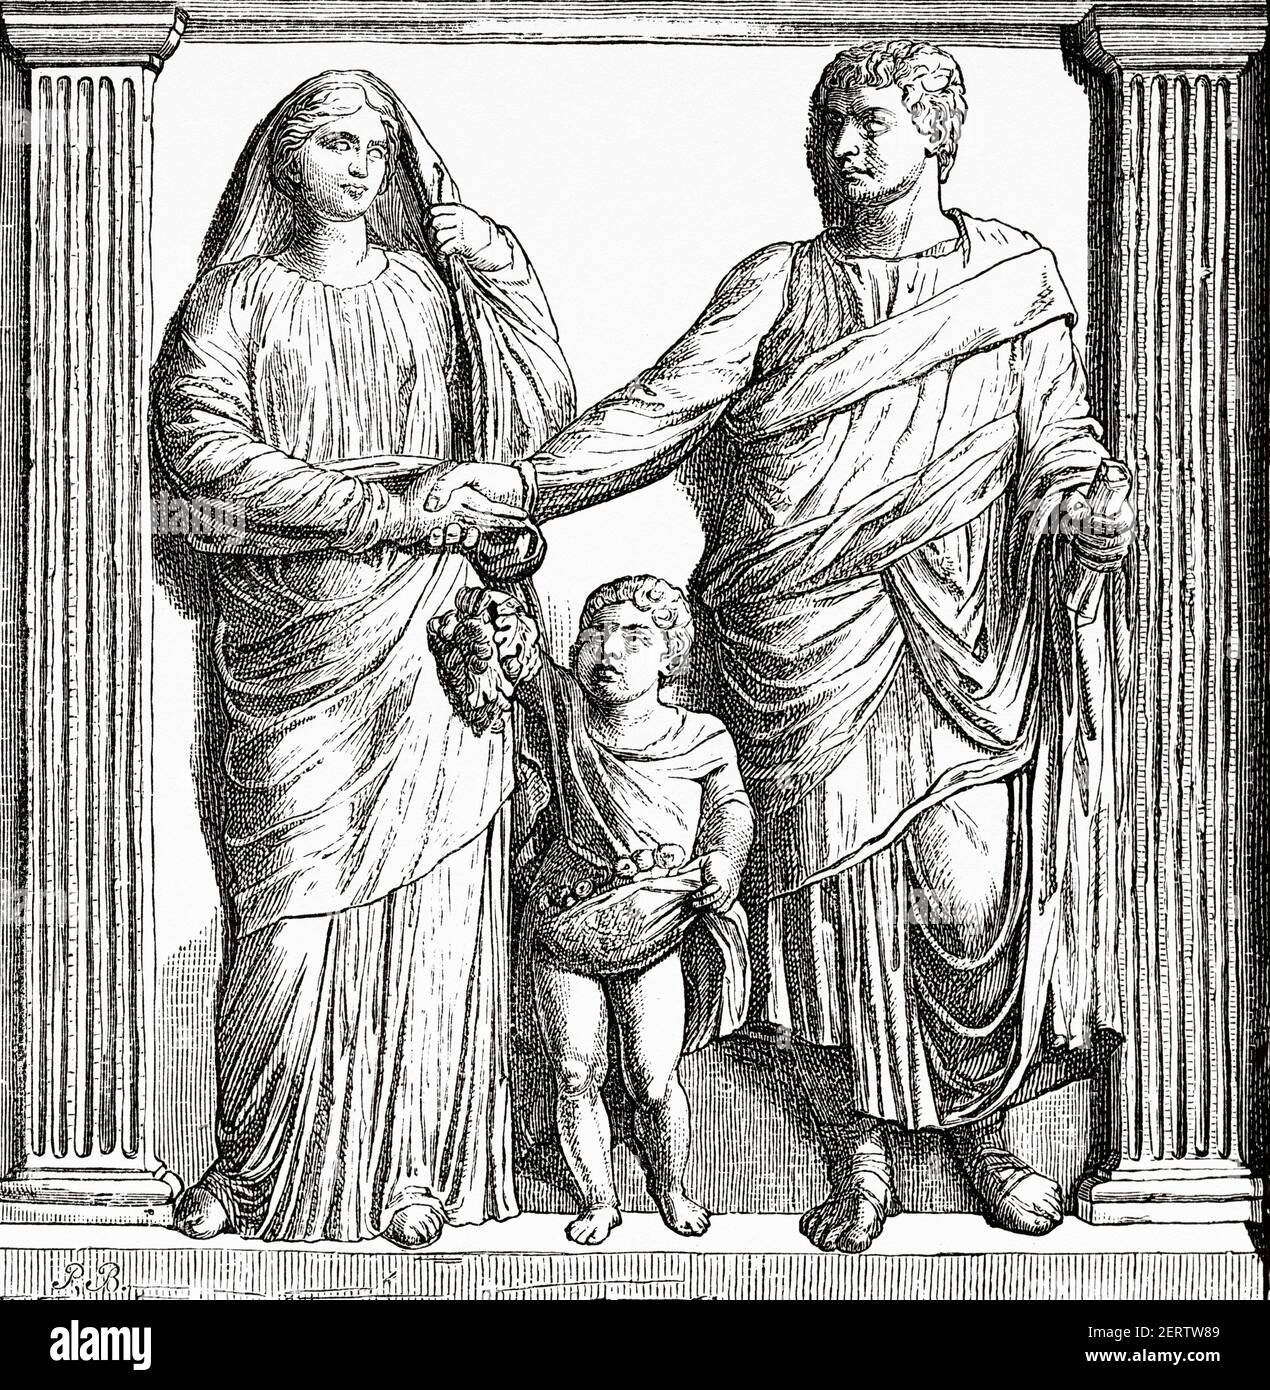 Roman family with their son, Ancient roman empire. Italy, Europe. Old 19th century engraved illustration, El Mundo Ilustrado 1881 Stock Photo